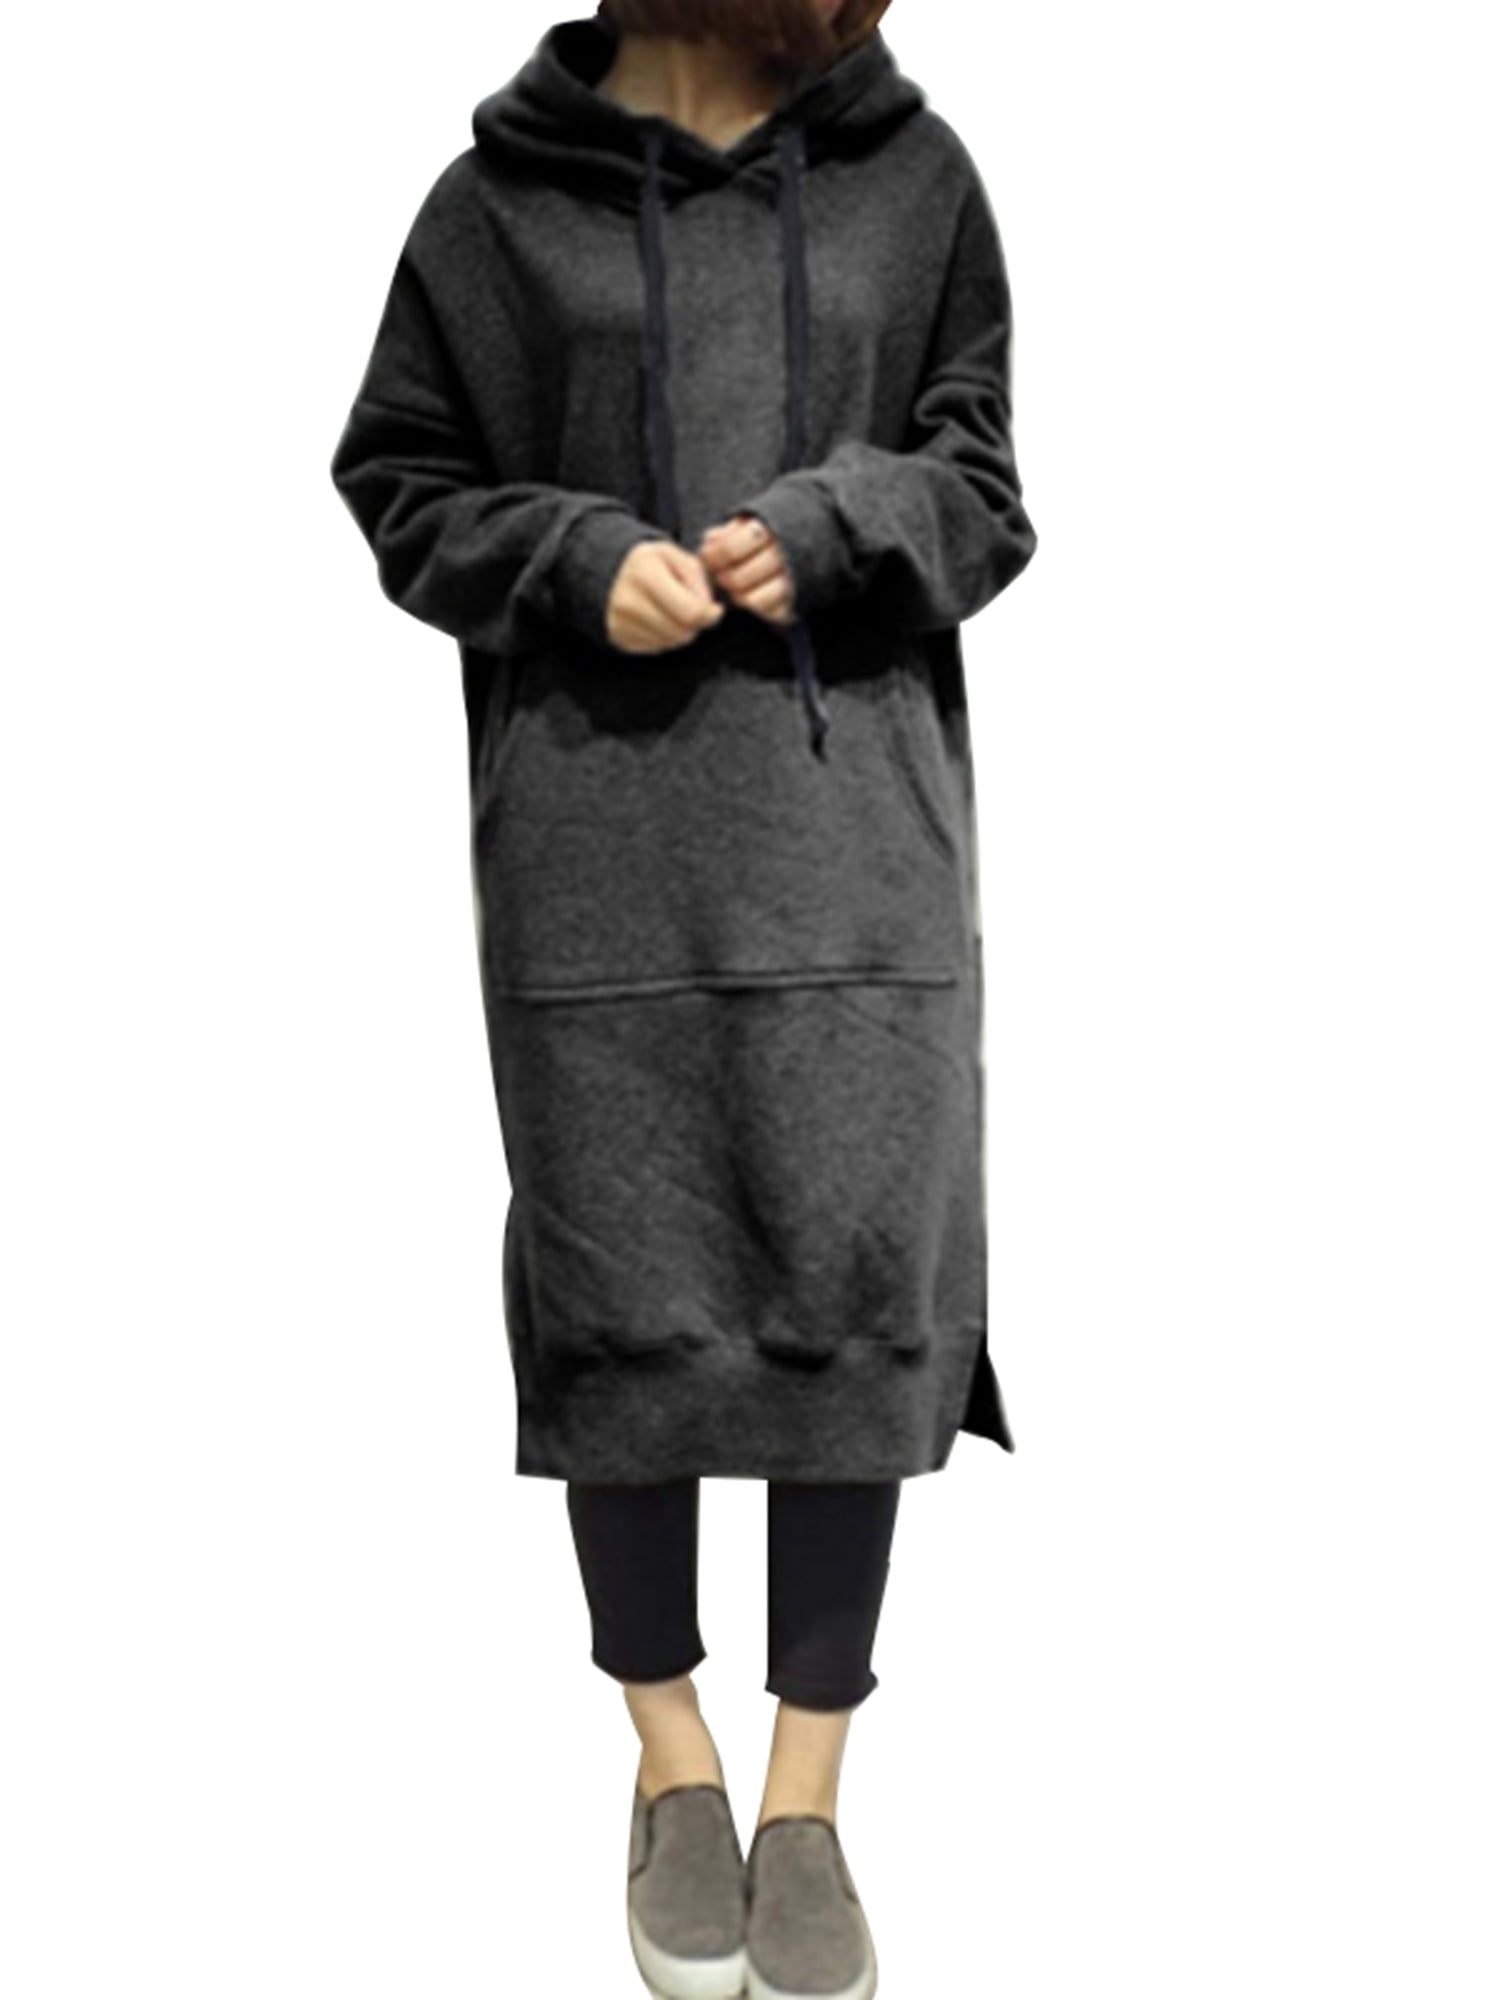 hoodie tunic dress